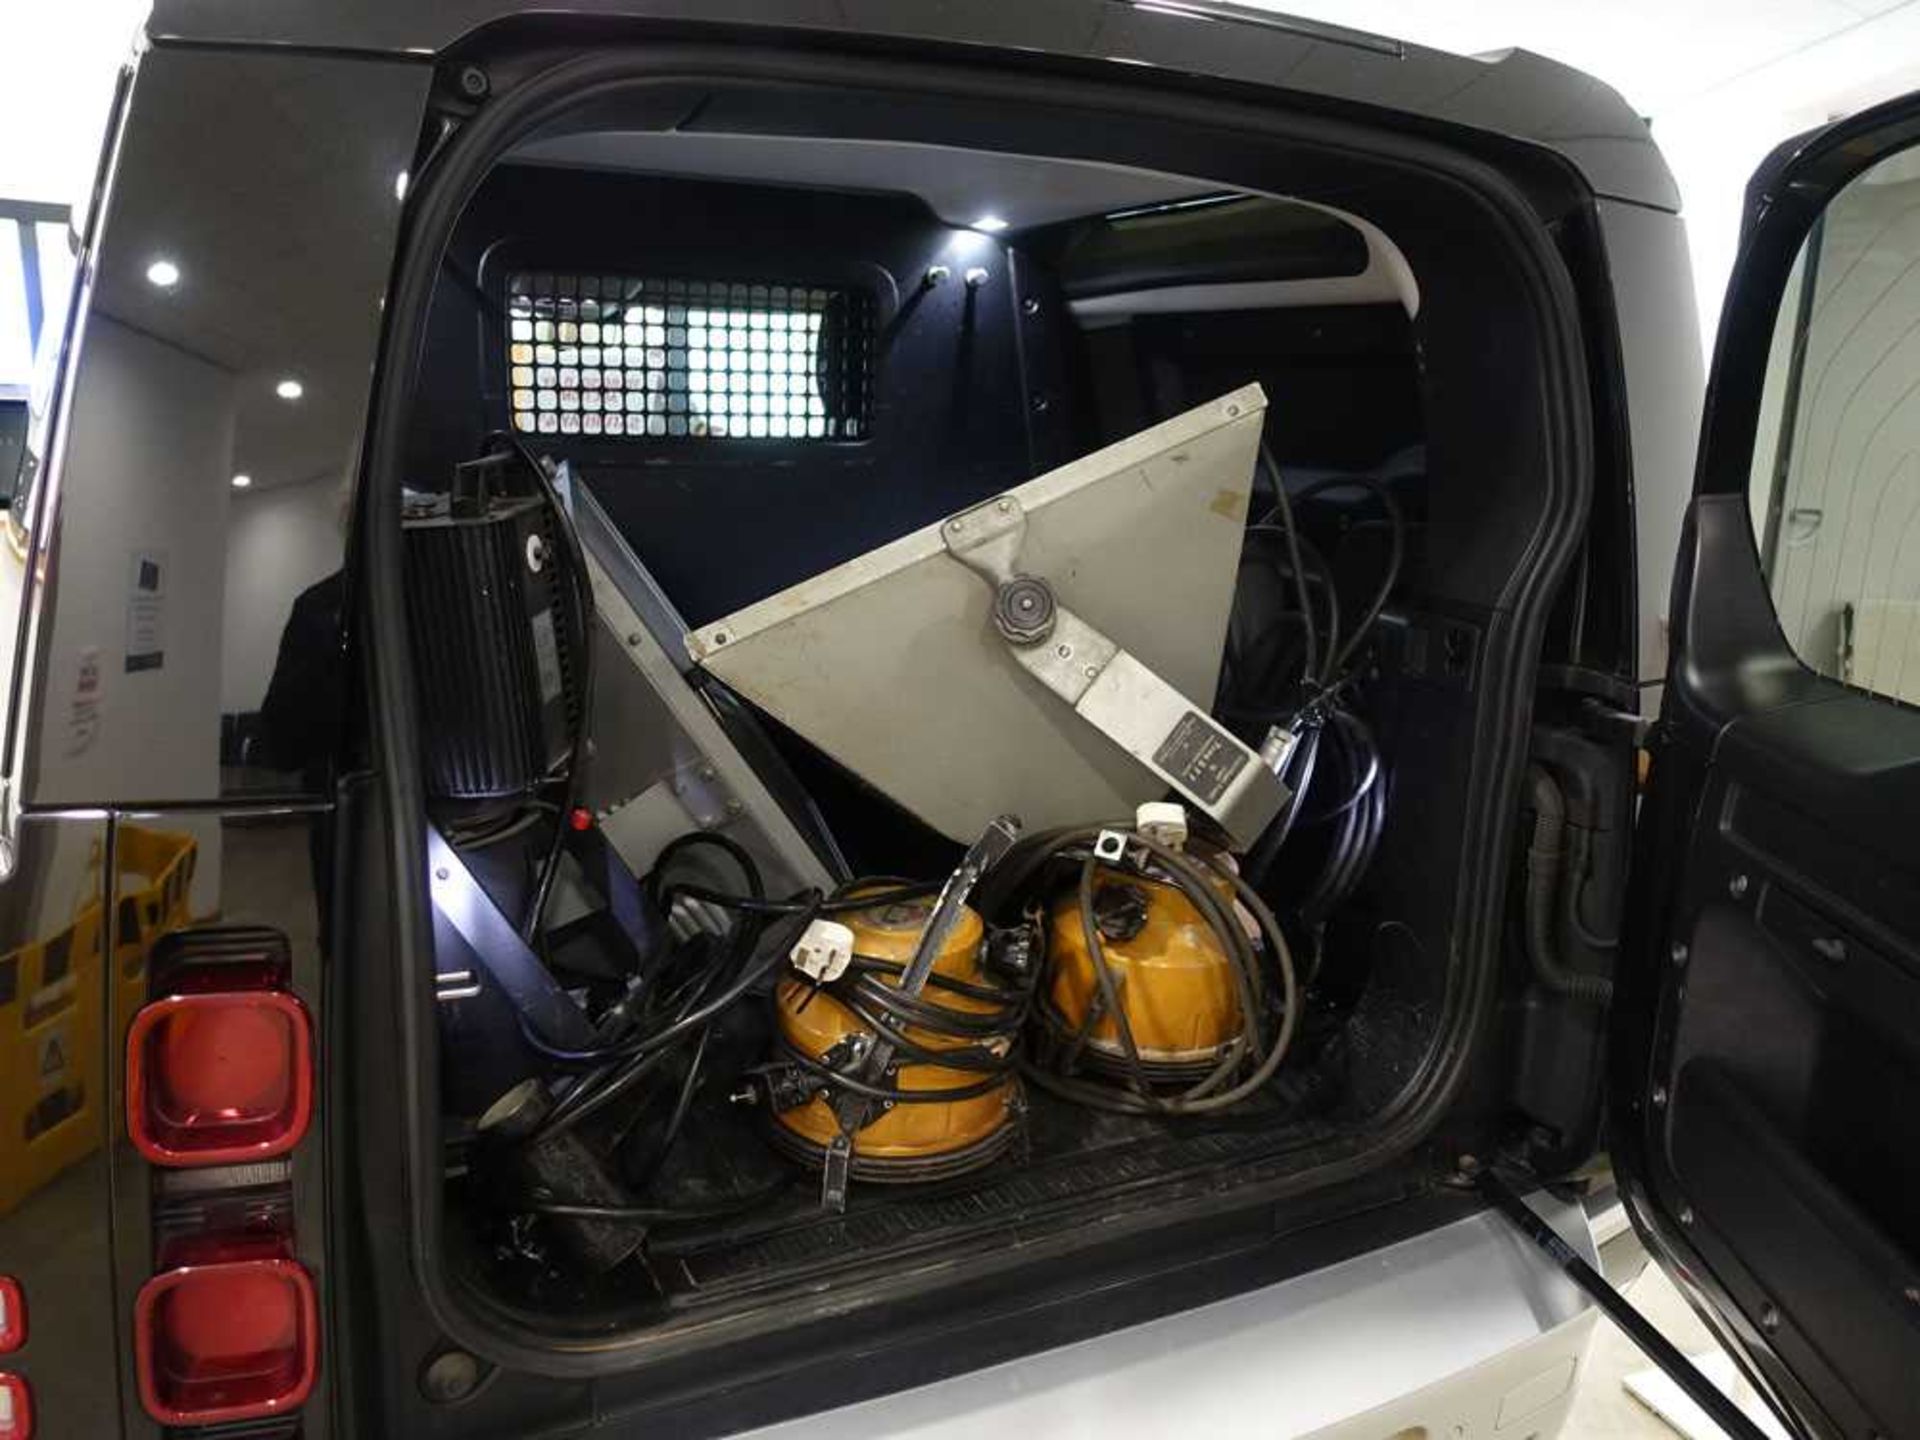 +VAT AX21 00G (2021) Land Rover Defender Hardtop D MHEV, automatic, 2 door panel van LGV in black, - Image 17 of 22